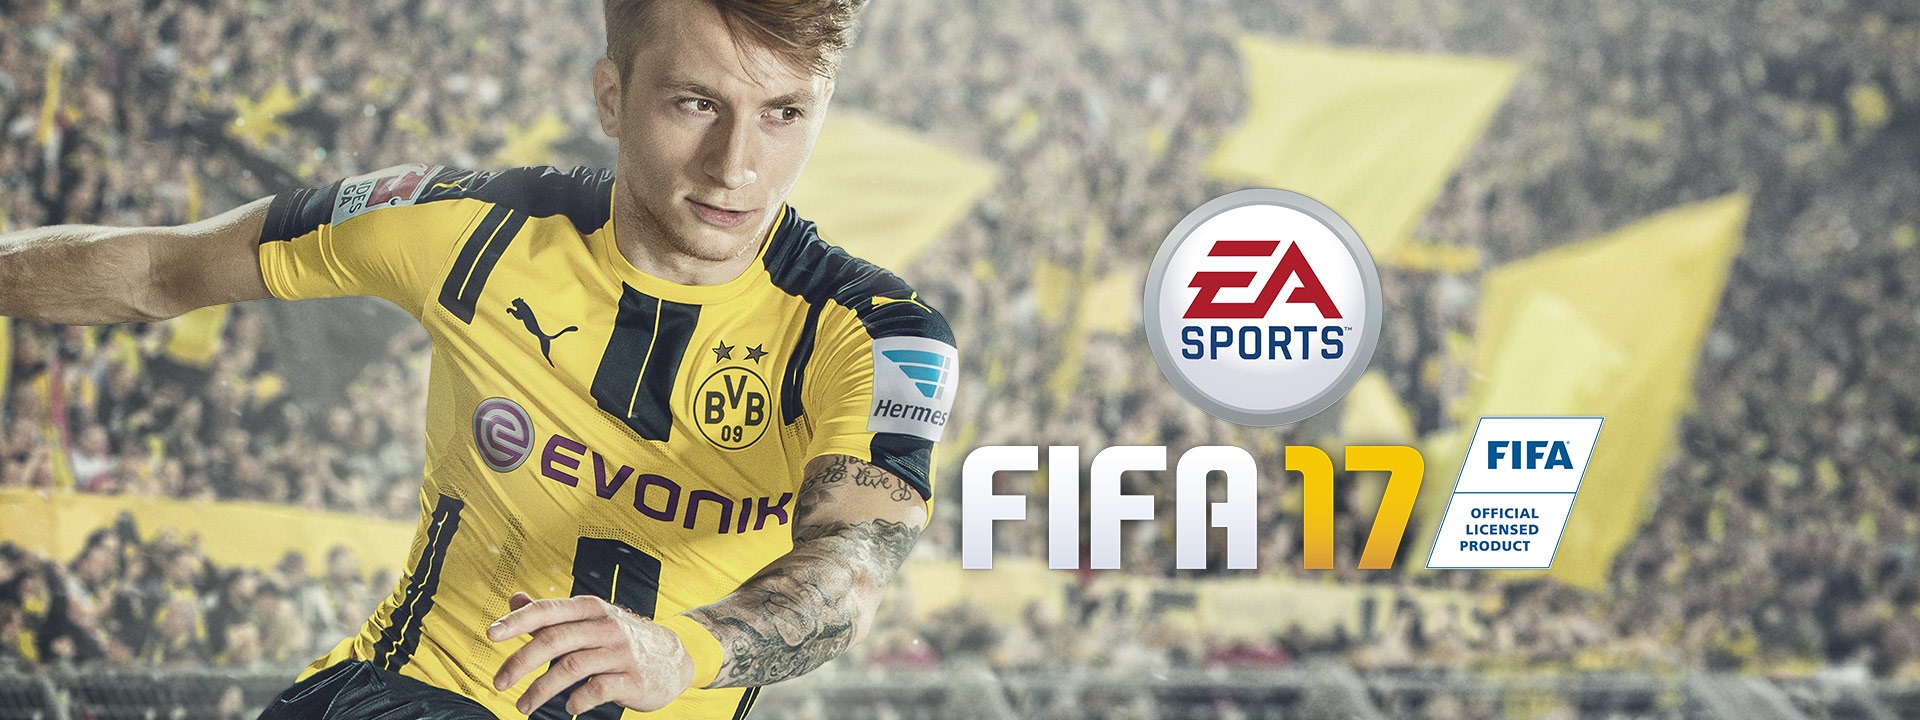 Vychází FIFA 17 s novým herním enginem a příběhovou linií